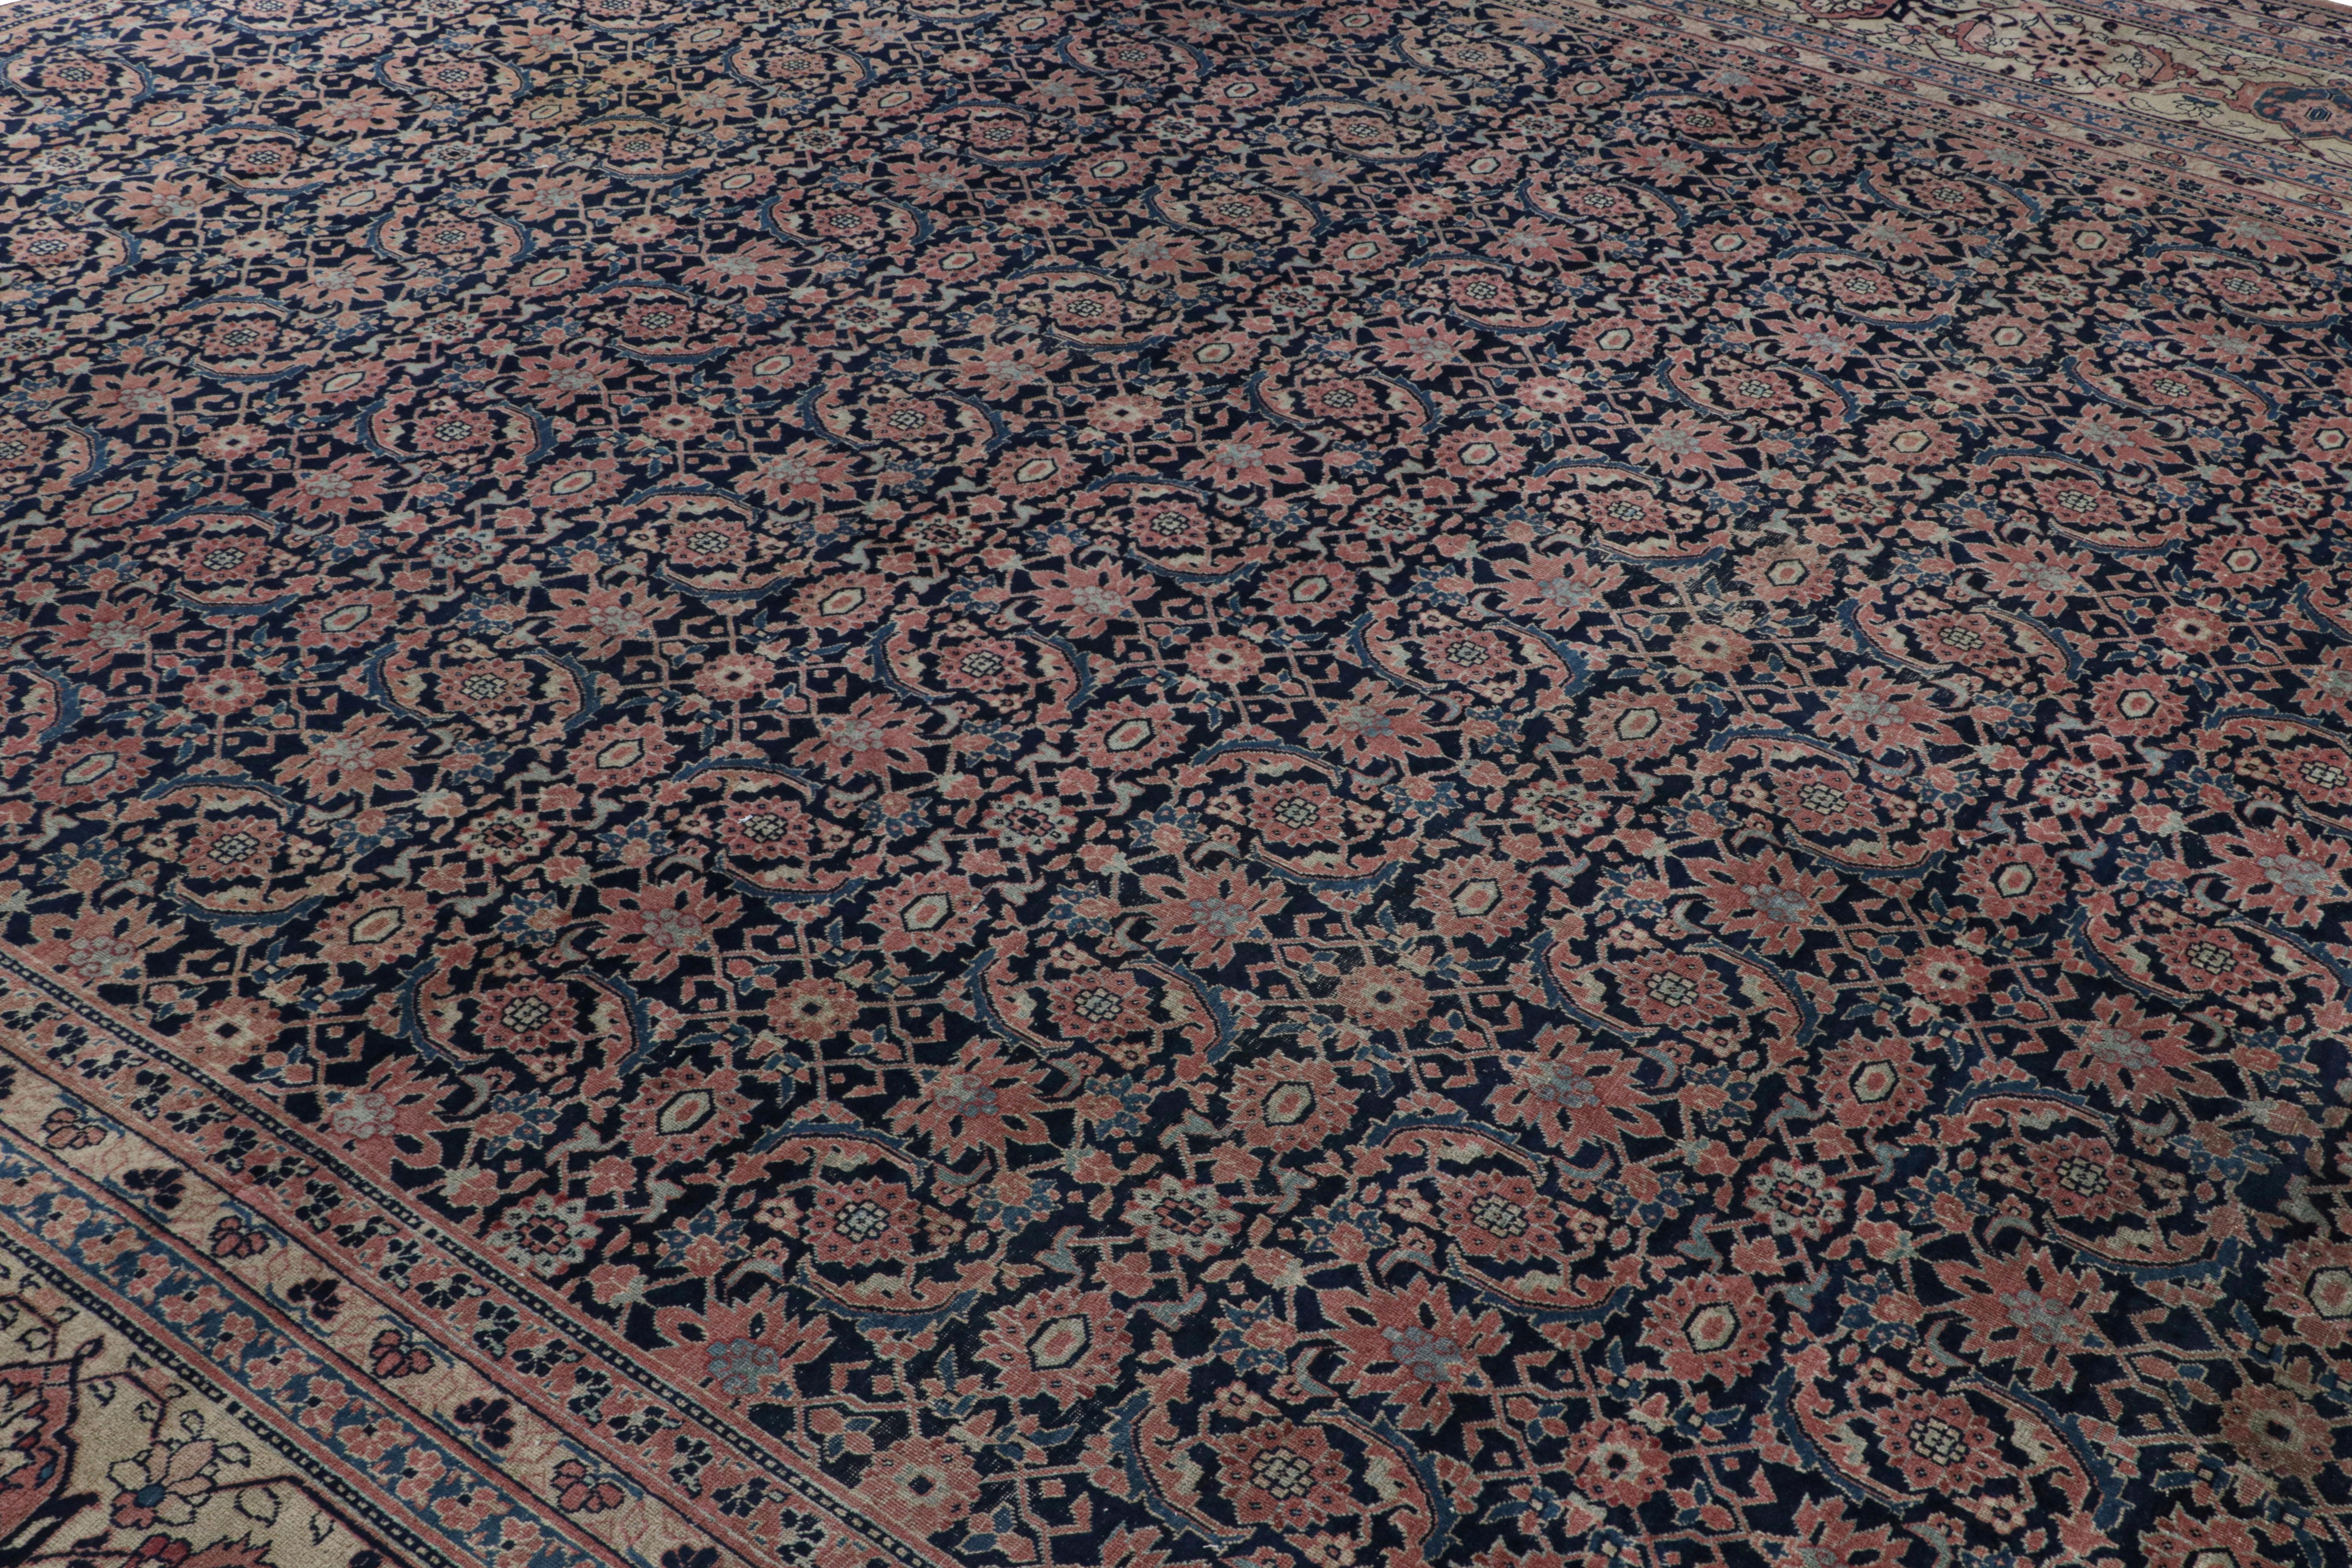 Noué à la main en laine vers 1920-1930, ce tapis surdimensionné de 13×17 est un rare tapis persan ancien de provenance tabrizienne.

Sur le Design :

Le tapis présente un champ bleu marine et des bordures or clair soulignant des motifs floraux dans